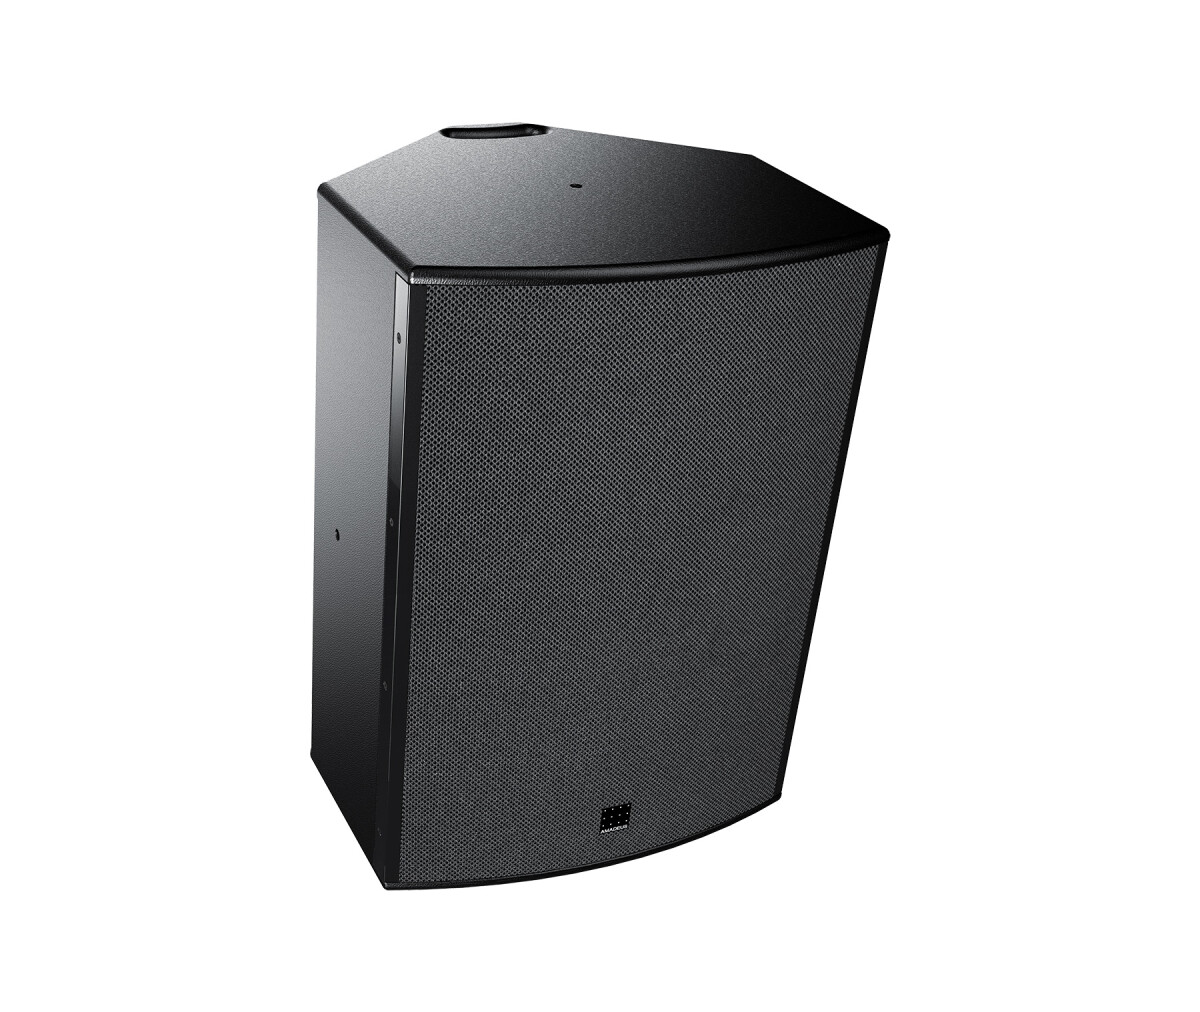 Amadeus relaunches the UDX loudspeaker Series